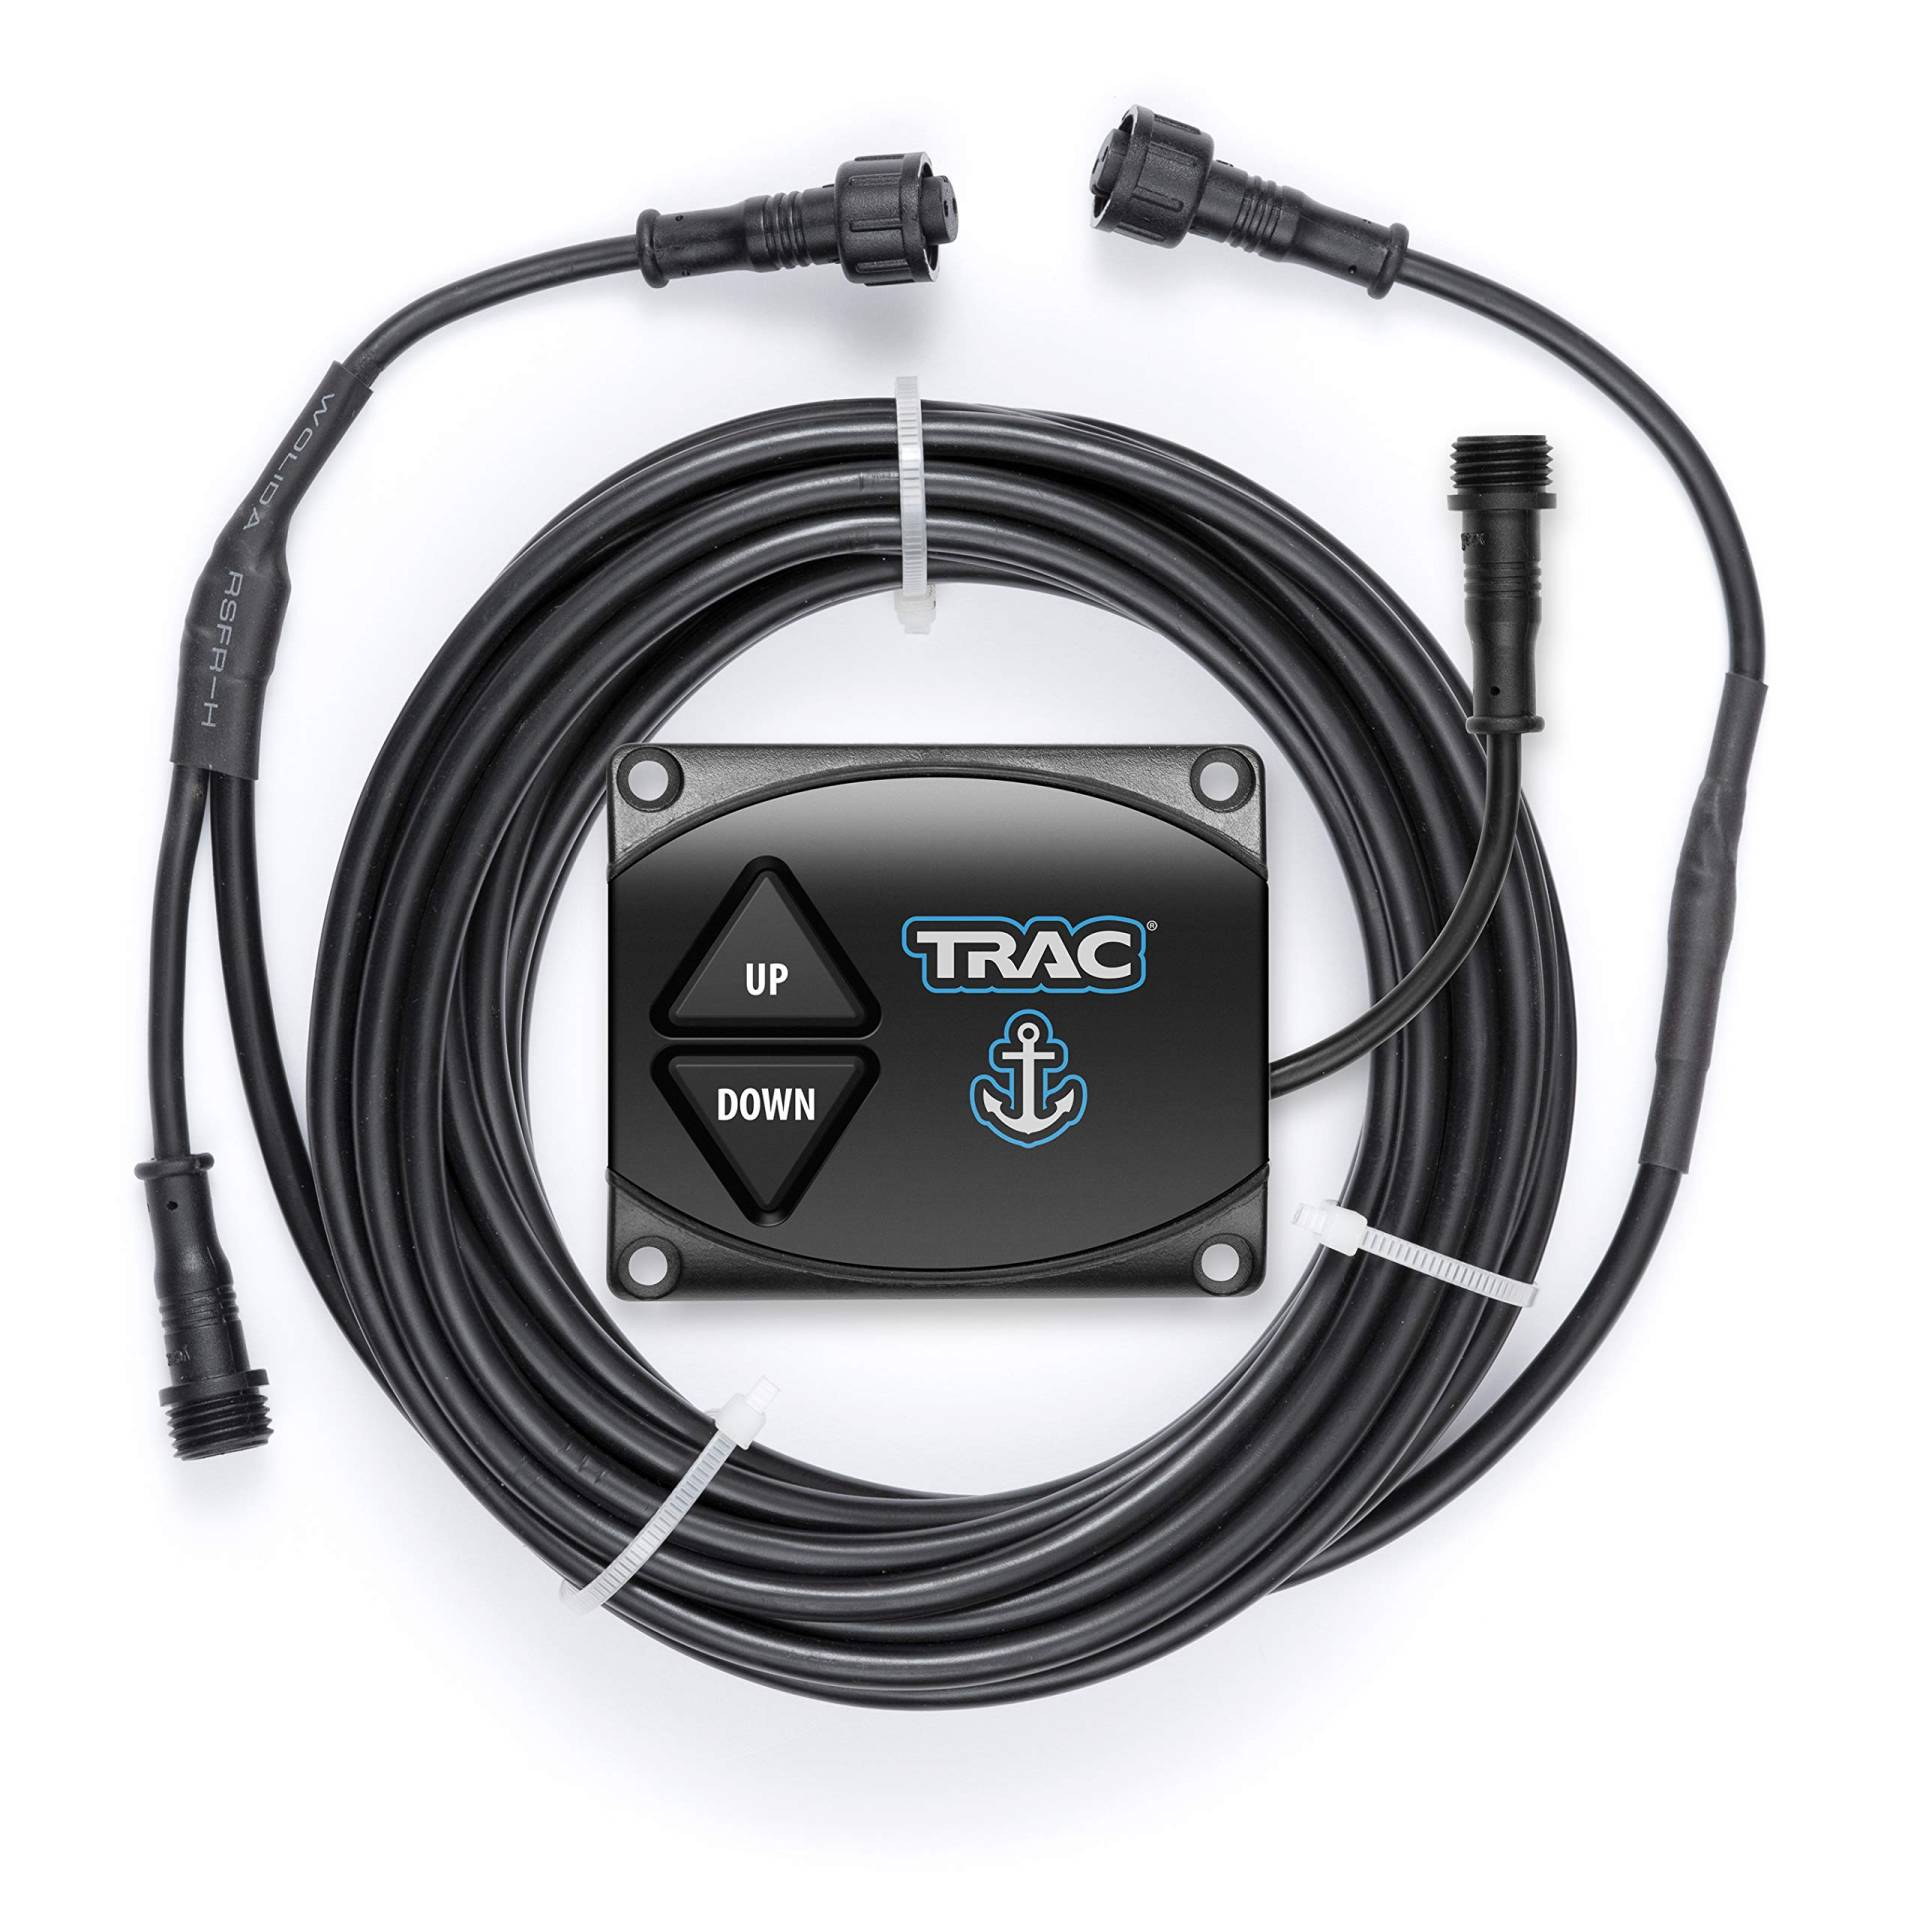 Trac Outdoors Anchor Winch G3 Second Switch Kit – nur kompatibel mit G3 Ankerwinden Modellen (69043) von Trac Outdoors